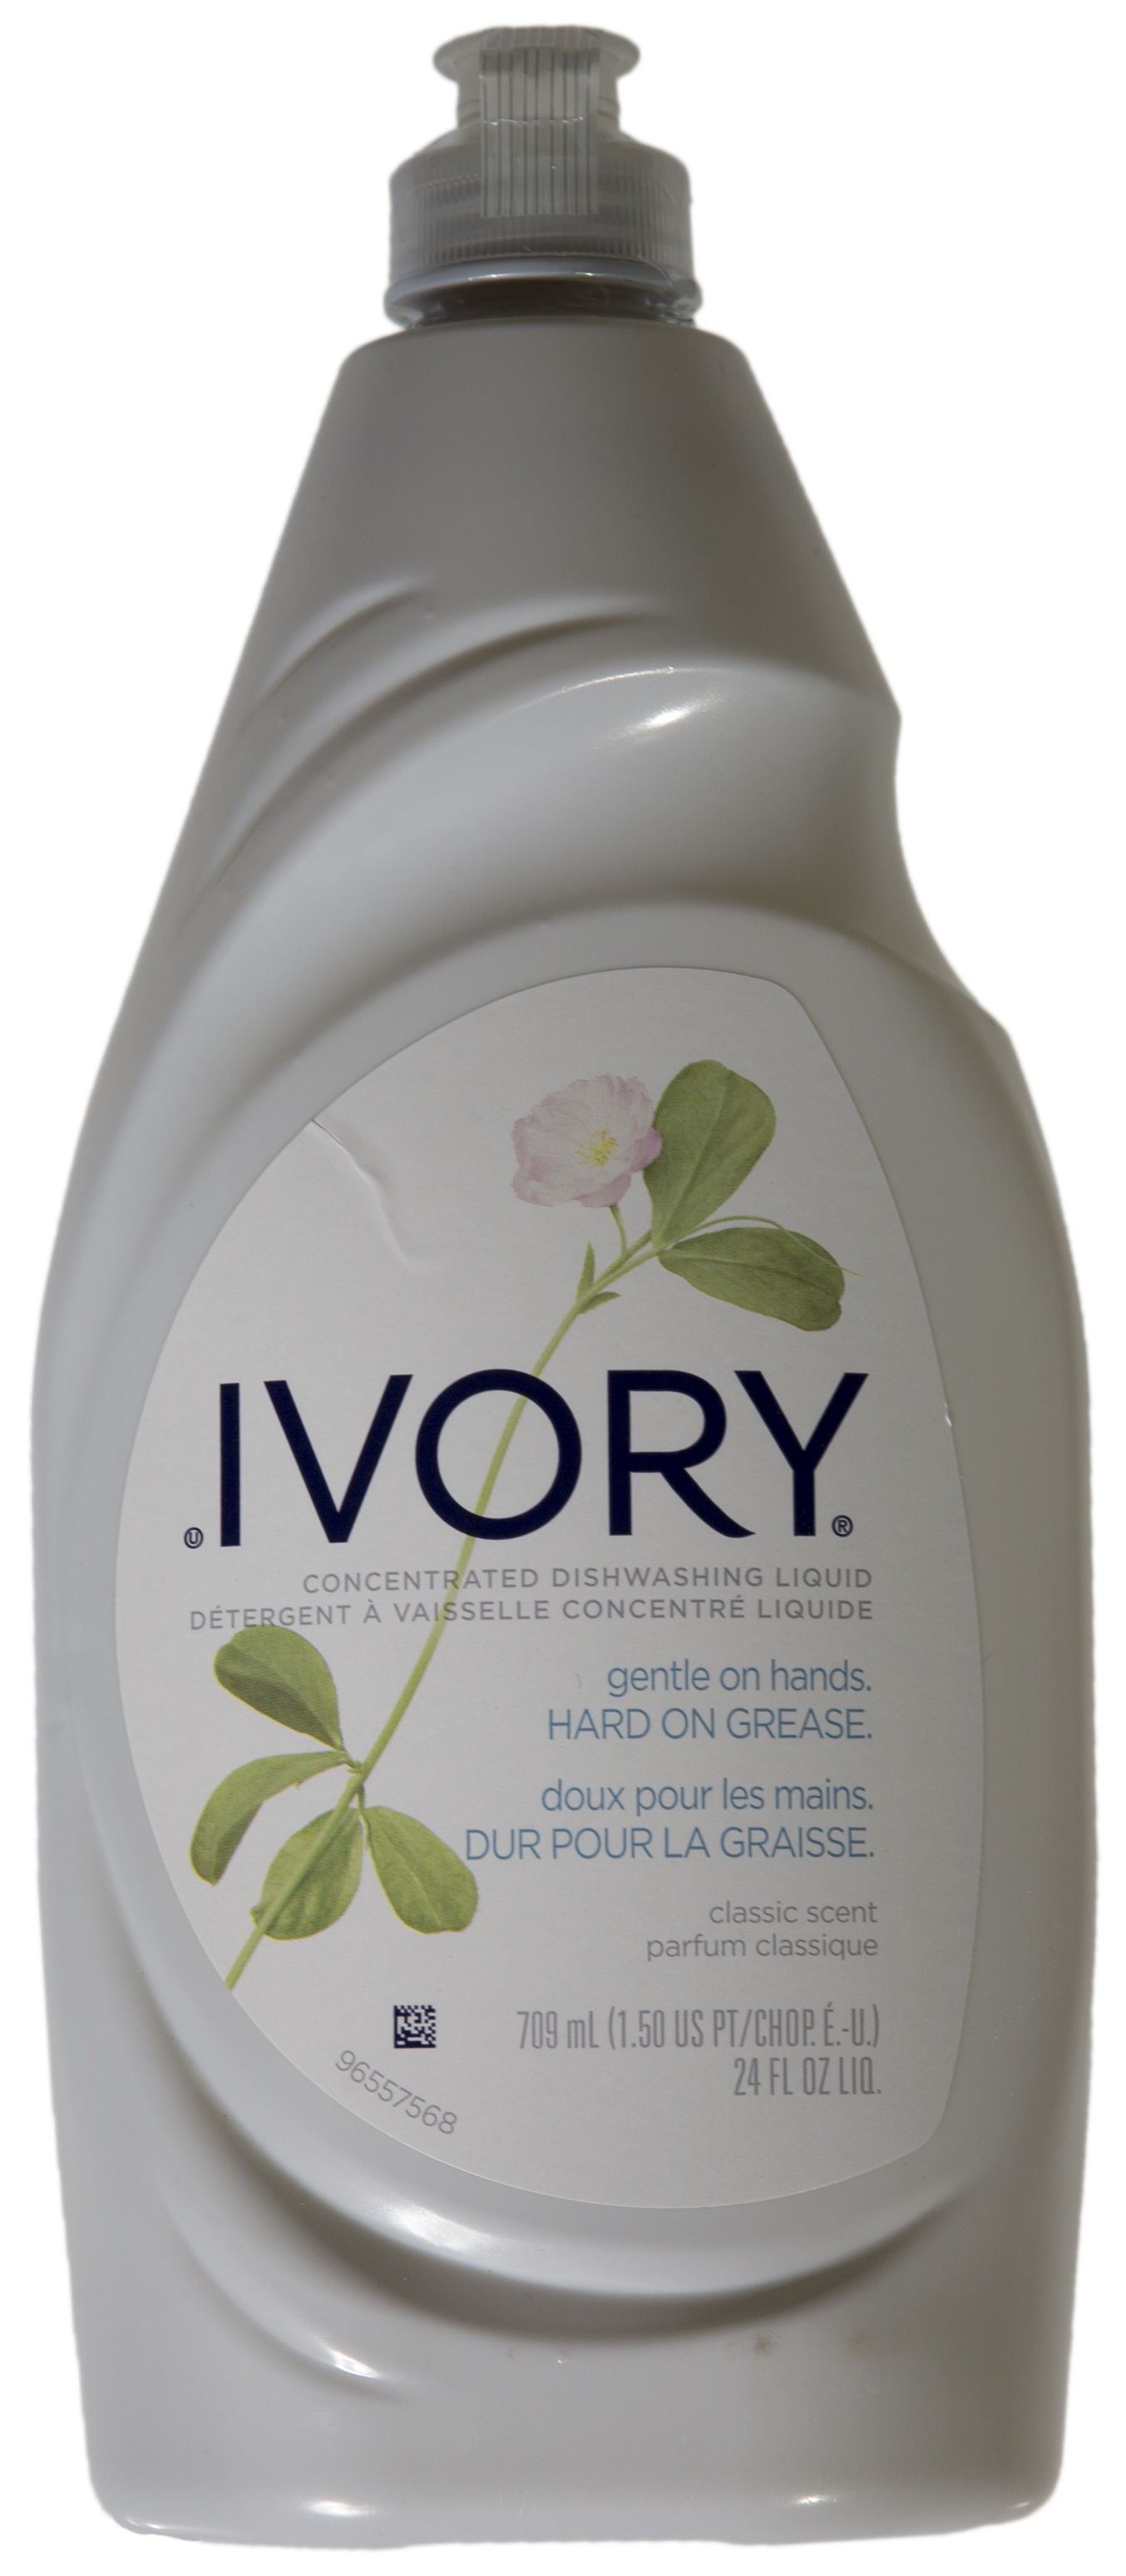 IVORY-Reinigungsemulsion 709 ml Flasche für Eletrocap | GEL711017